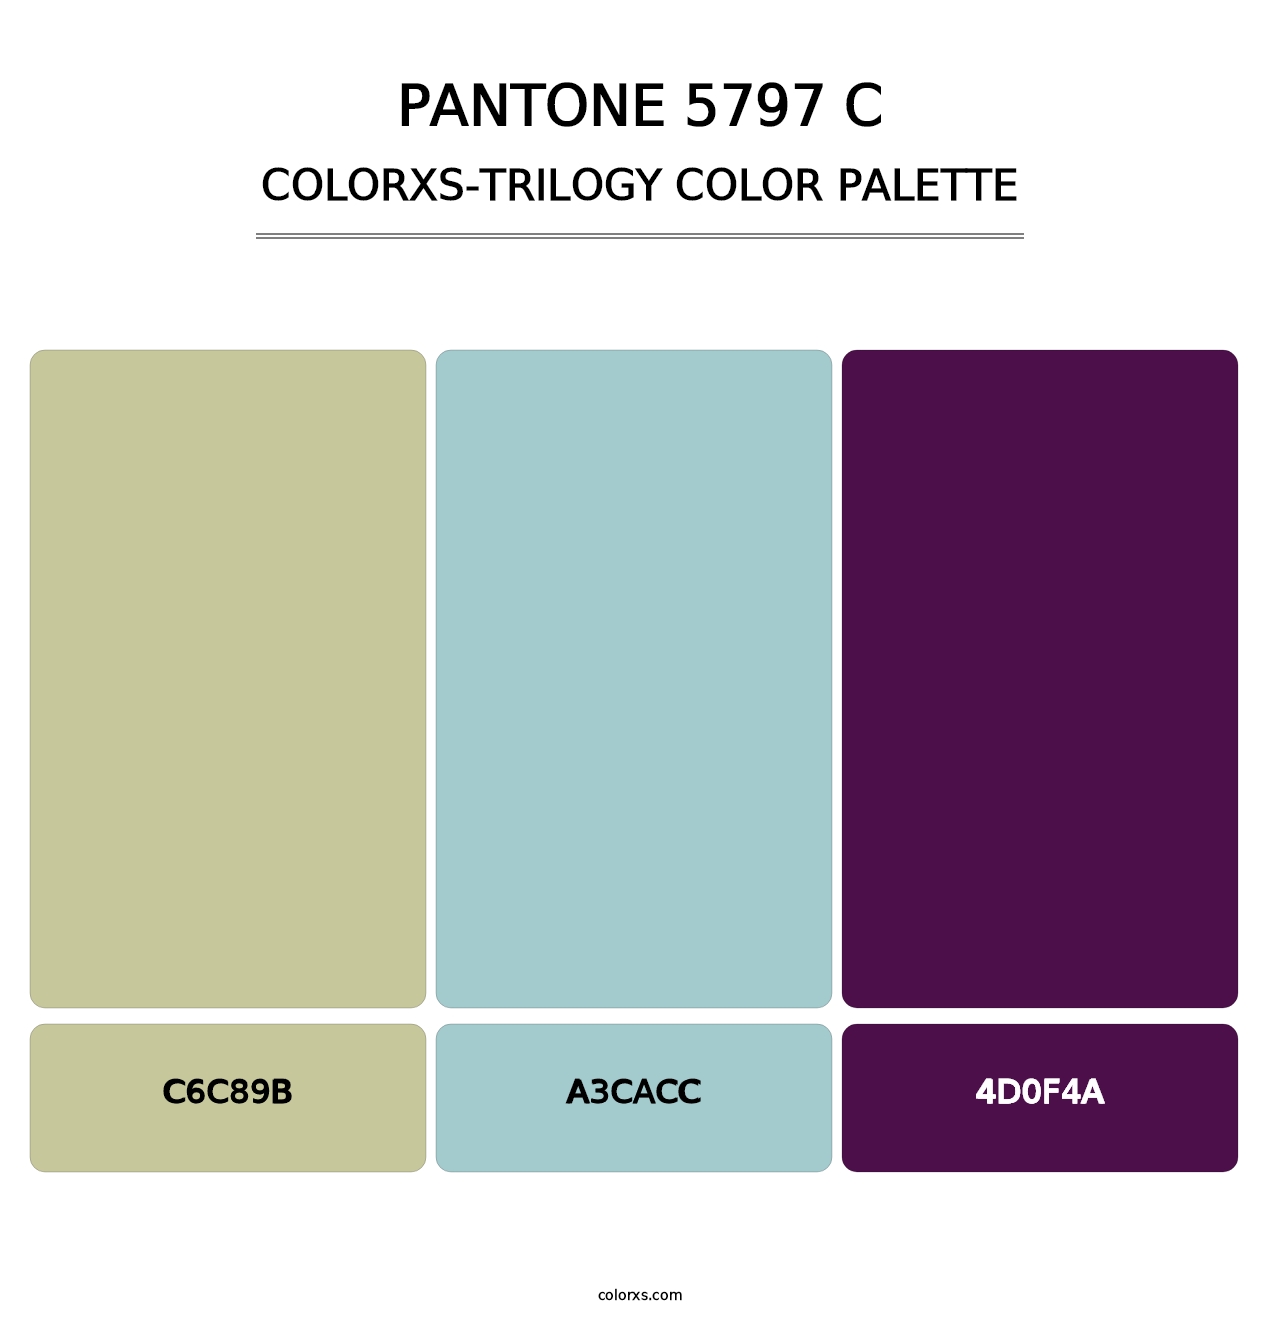 PANTONE 5797 C - Colorxs Trilogy Palette